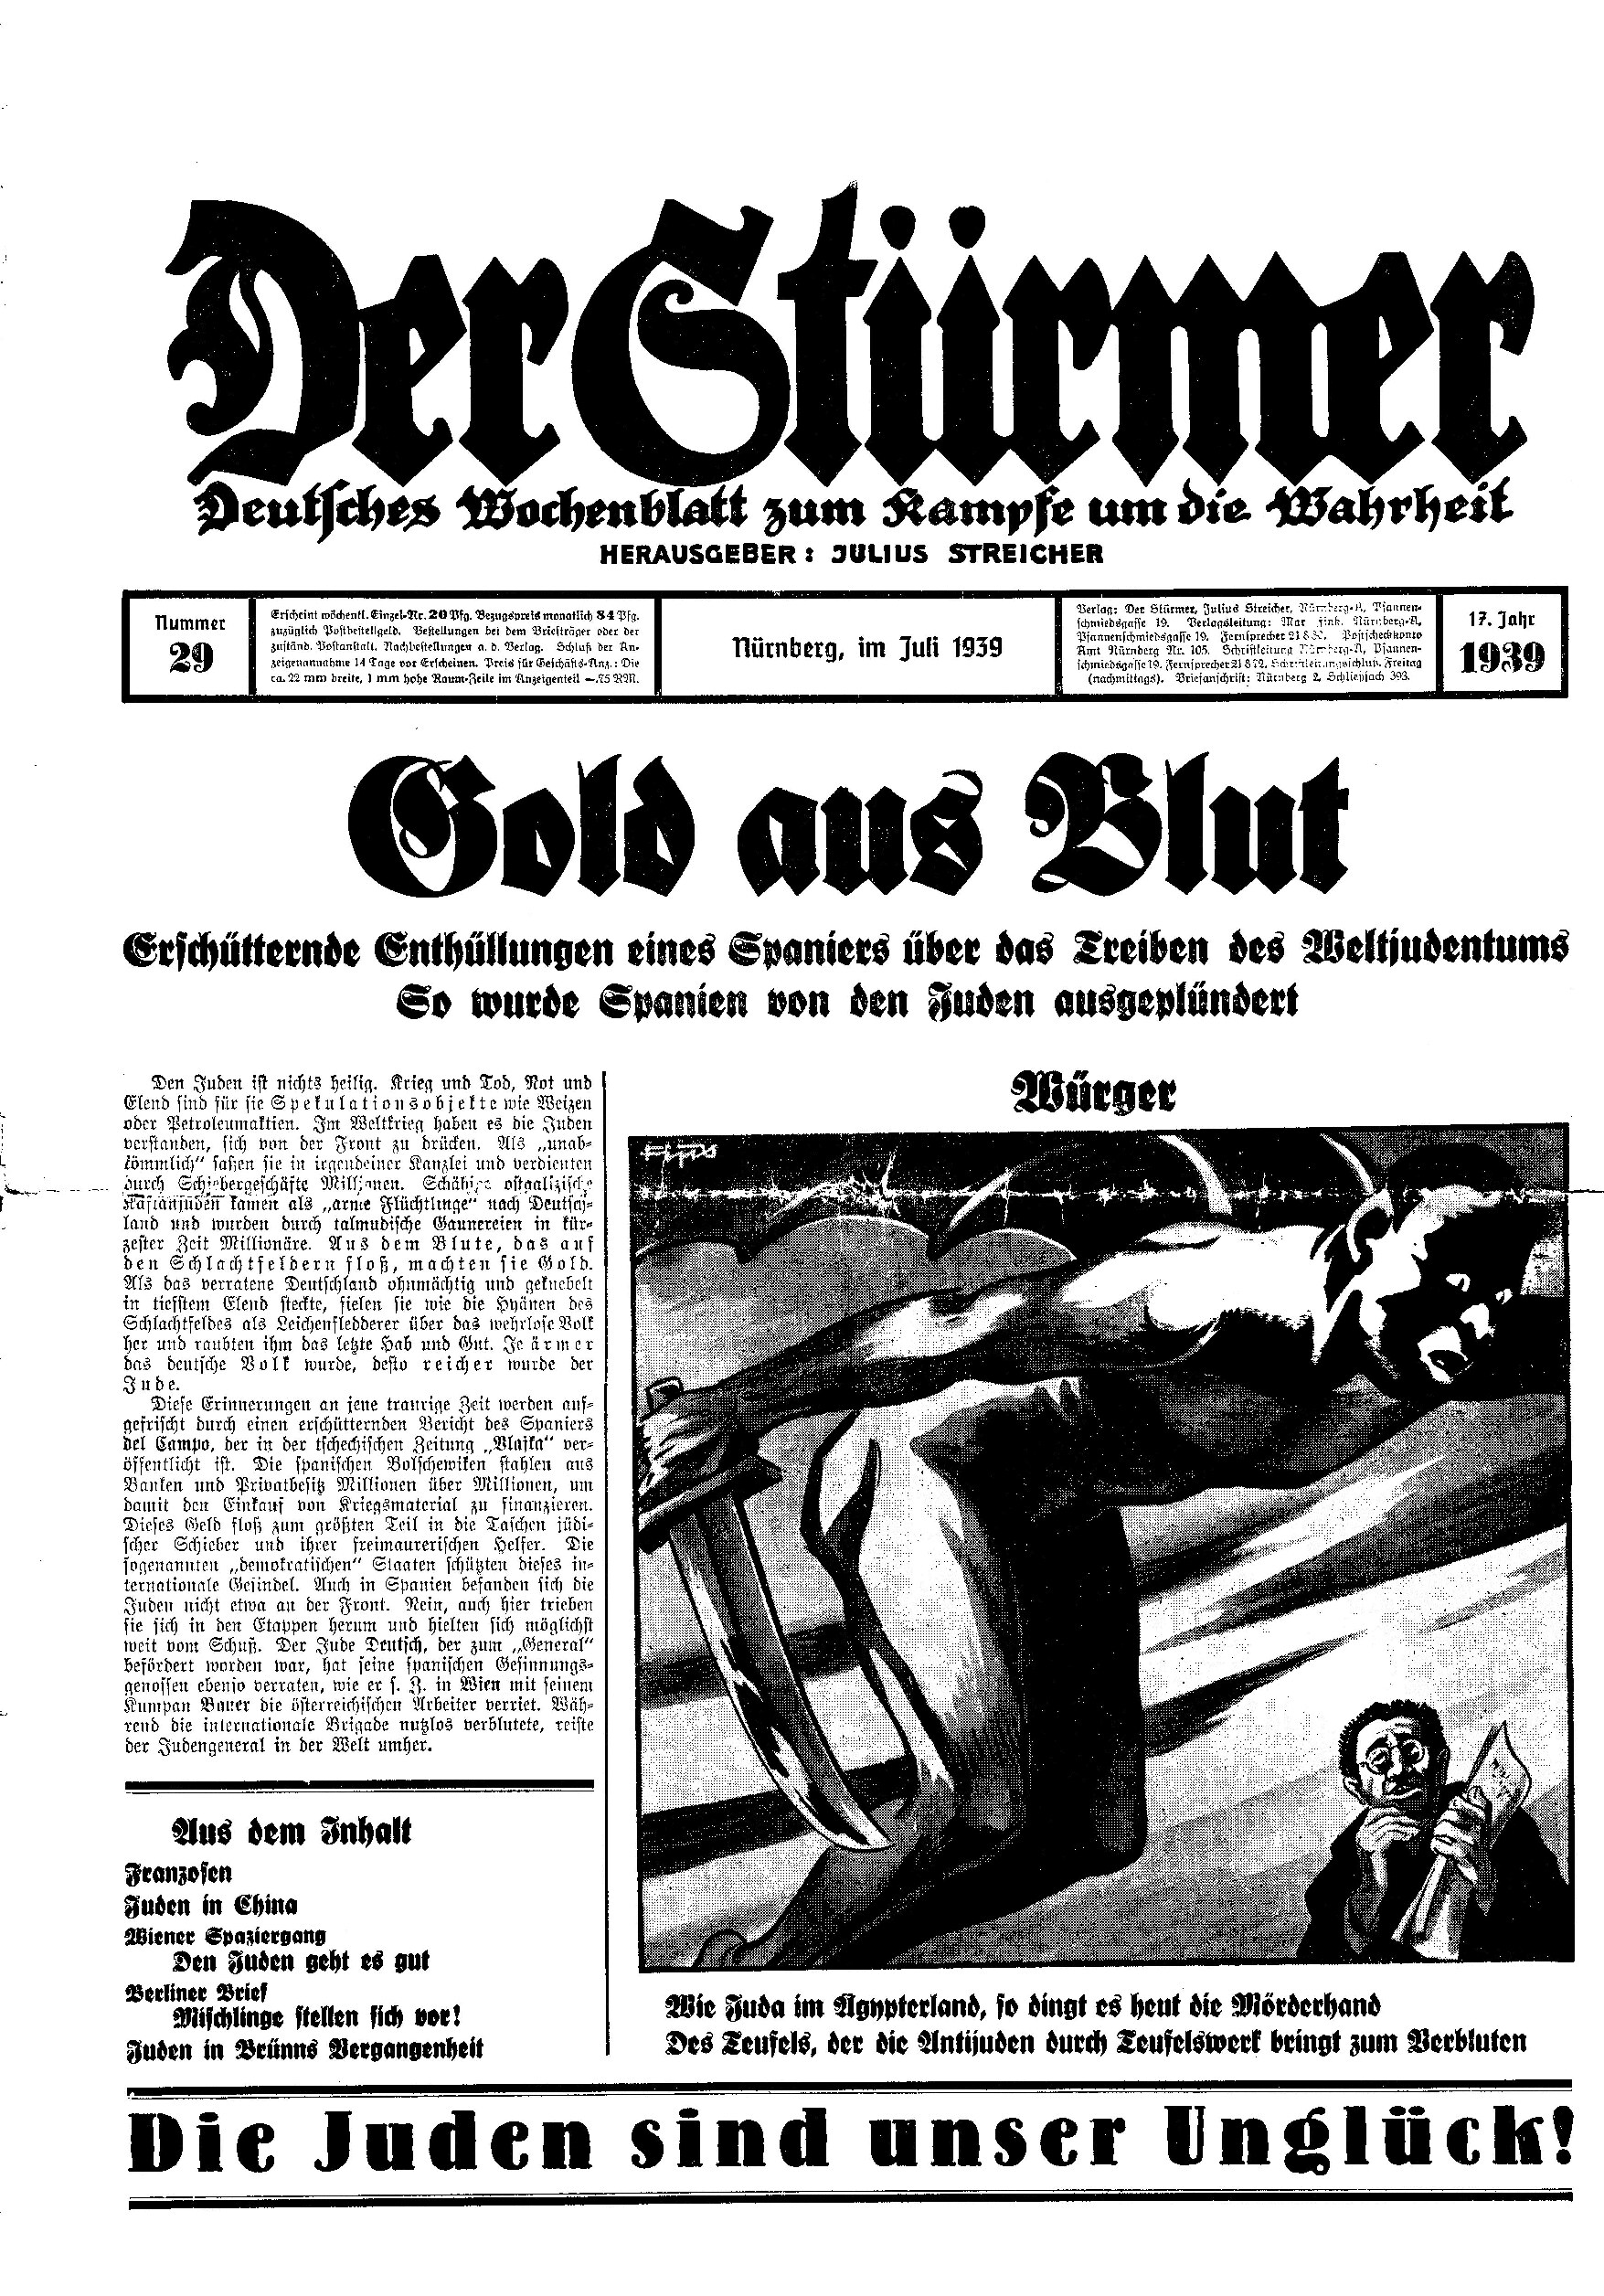 Der Stürmer - 1939 Nr. 29 - Gold aus Blut